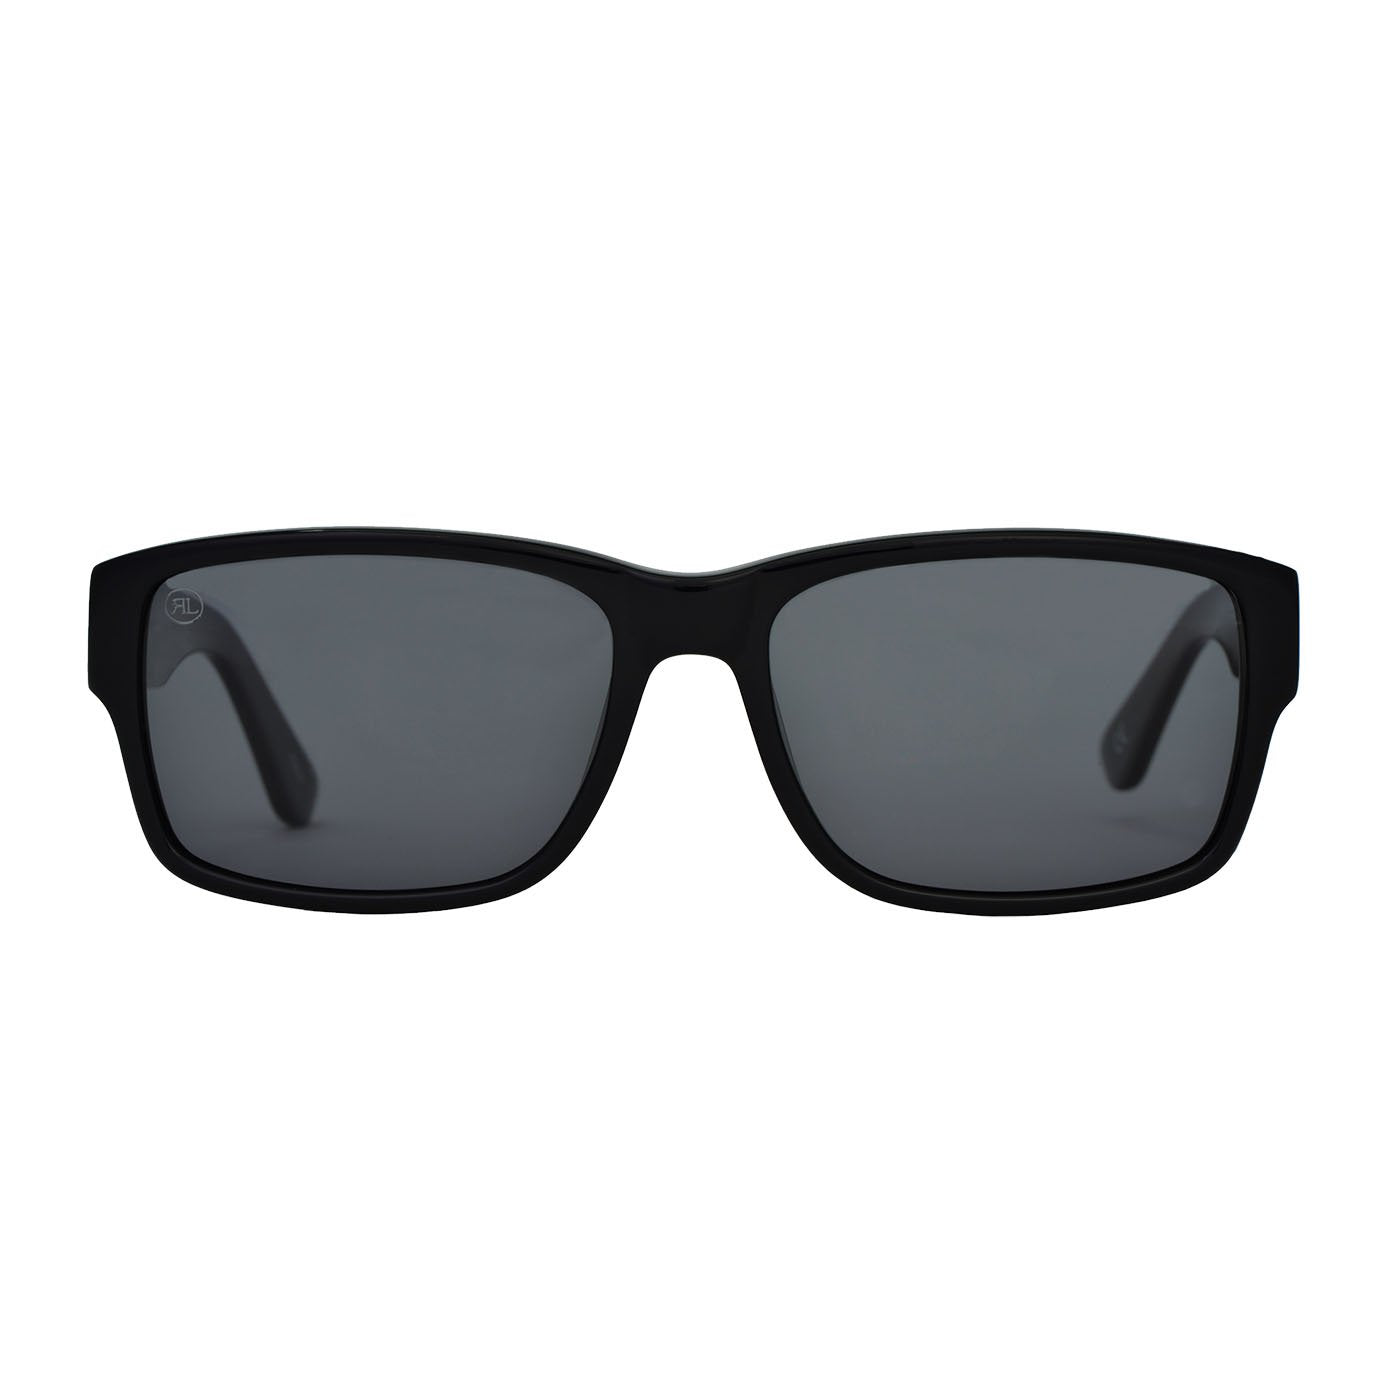 RENATO LANDINI Men's Sunglasses Black/ Ultra Vision